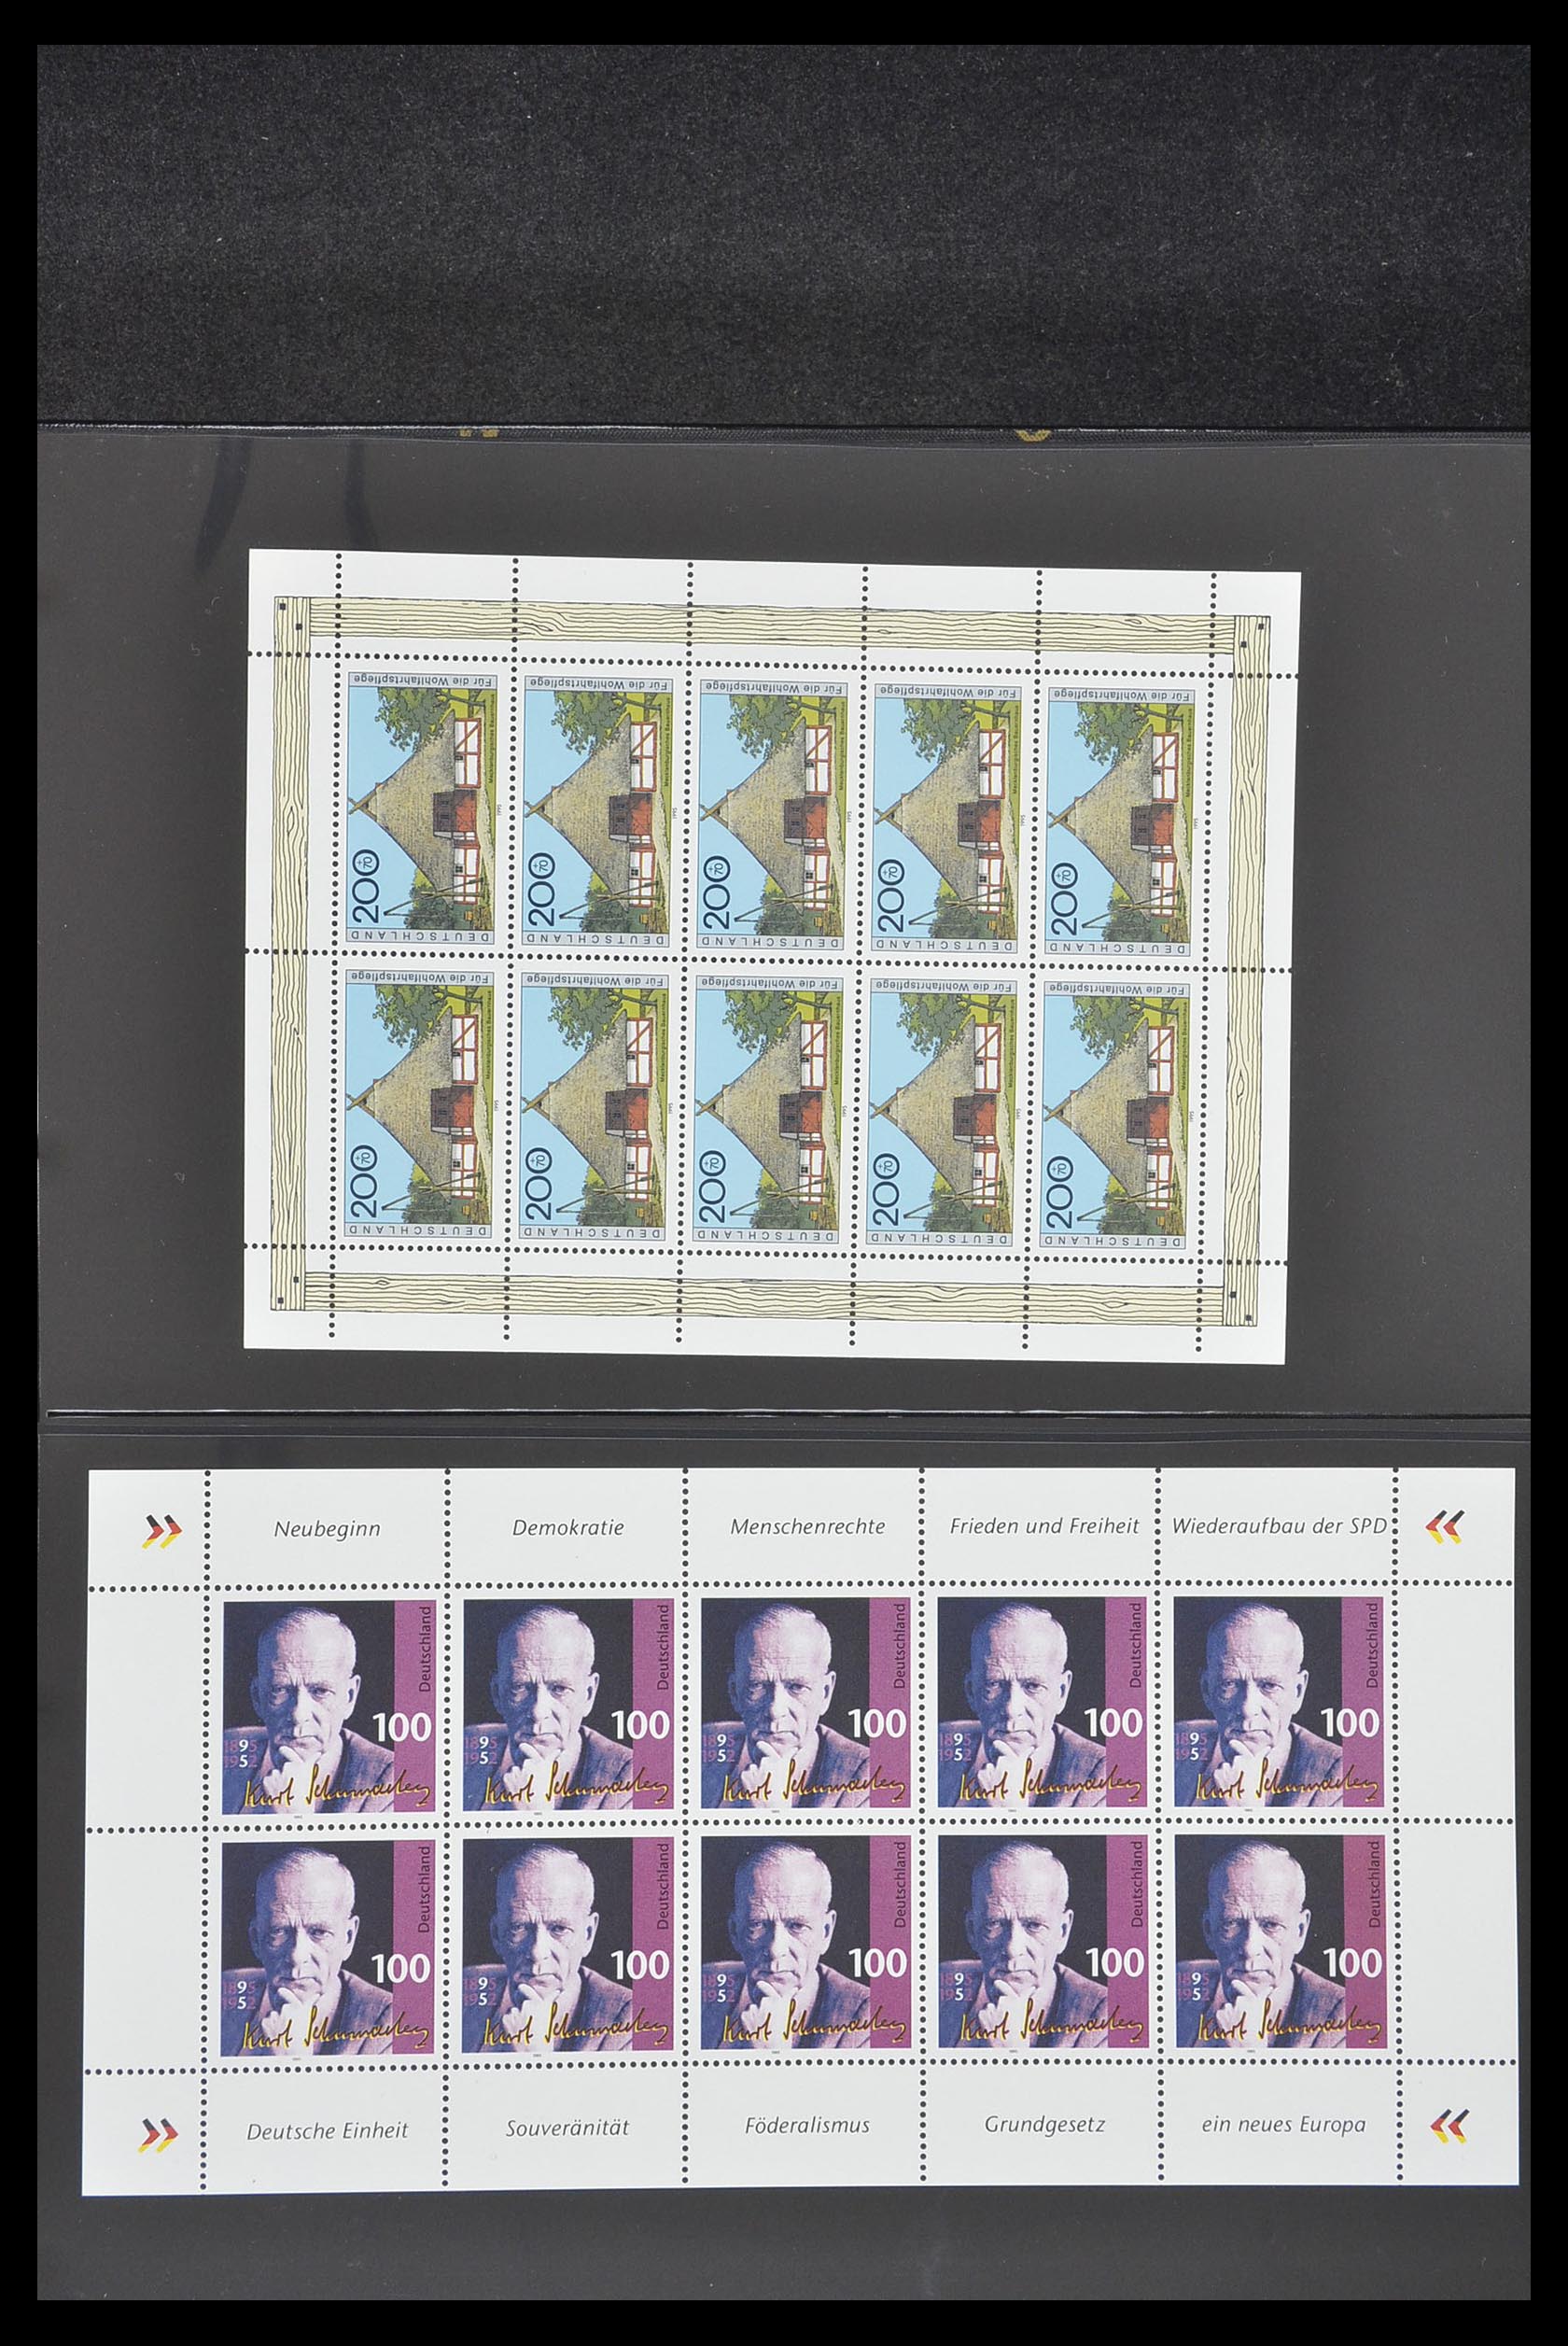 33936 032 - Stamp collection 33936 Bundespost kleinbogen 1994-2000.